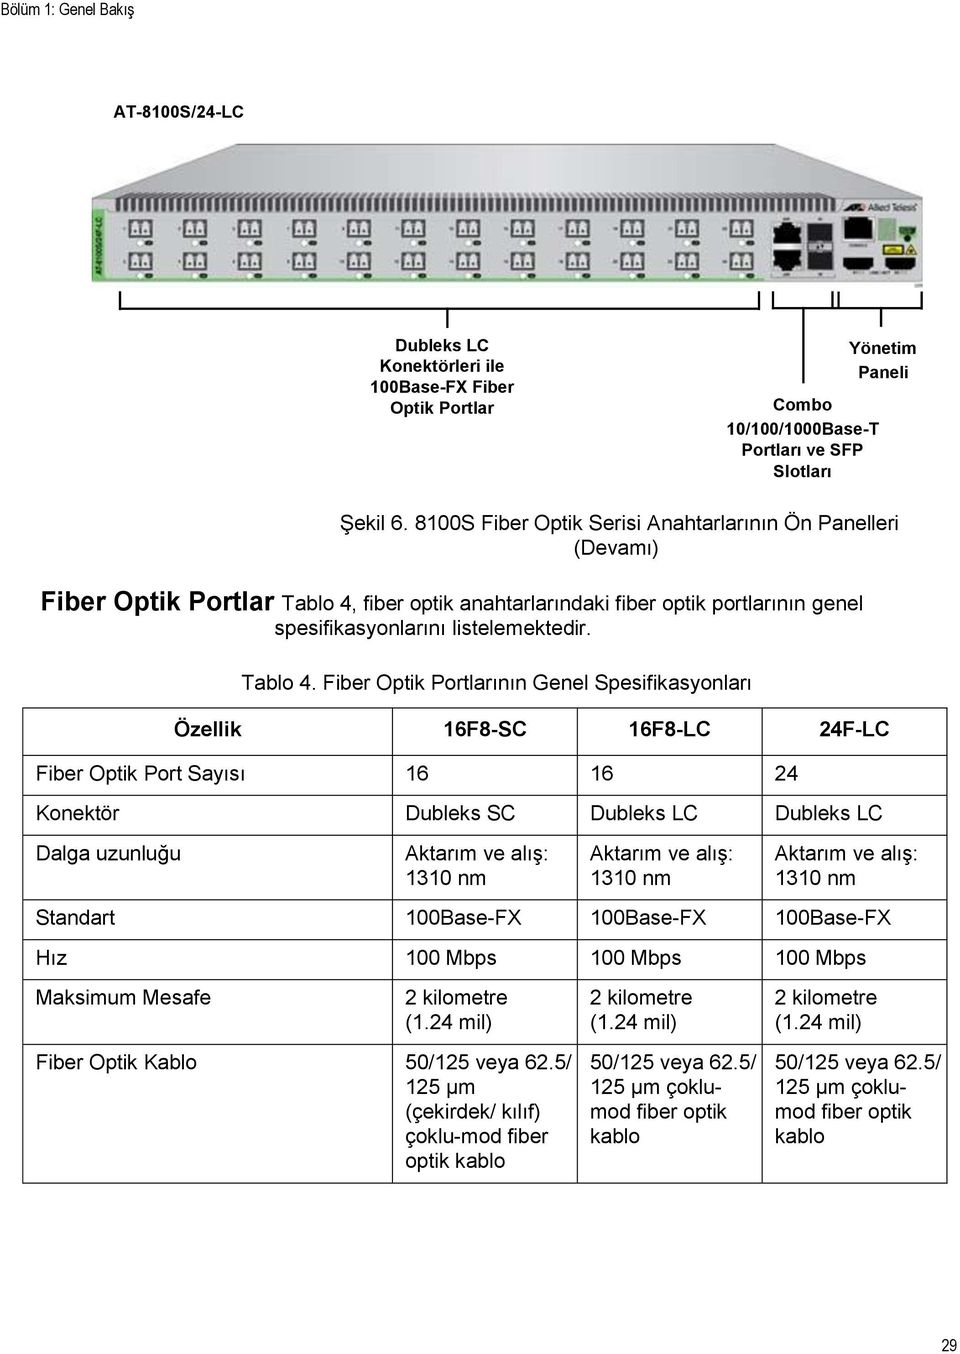 fiber optik anahtarlarındaki fiber optik portlarının genel spesifikasyonlarını listelemektedir. Tablo 4.